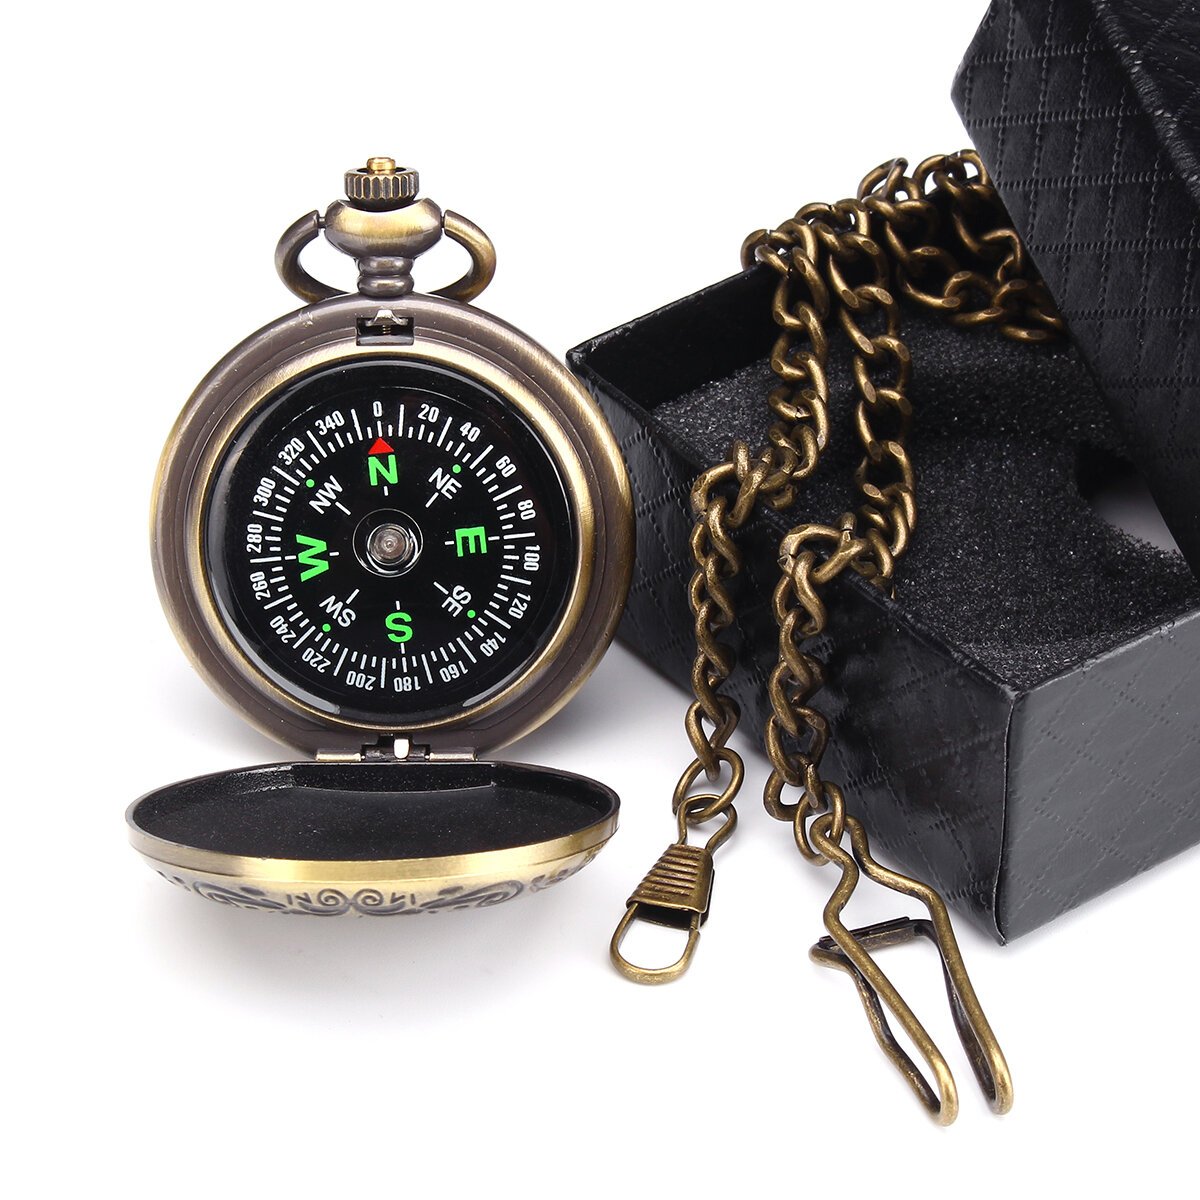 CHARMINER Zakkompas met ketting Draagbaar messing kompas Classic Springend deksel Waterdicht horloge Flip-Open navigatiehulpmiddelen